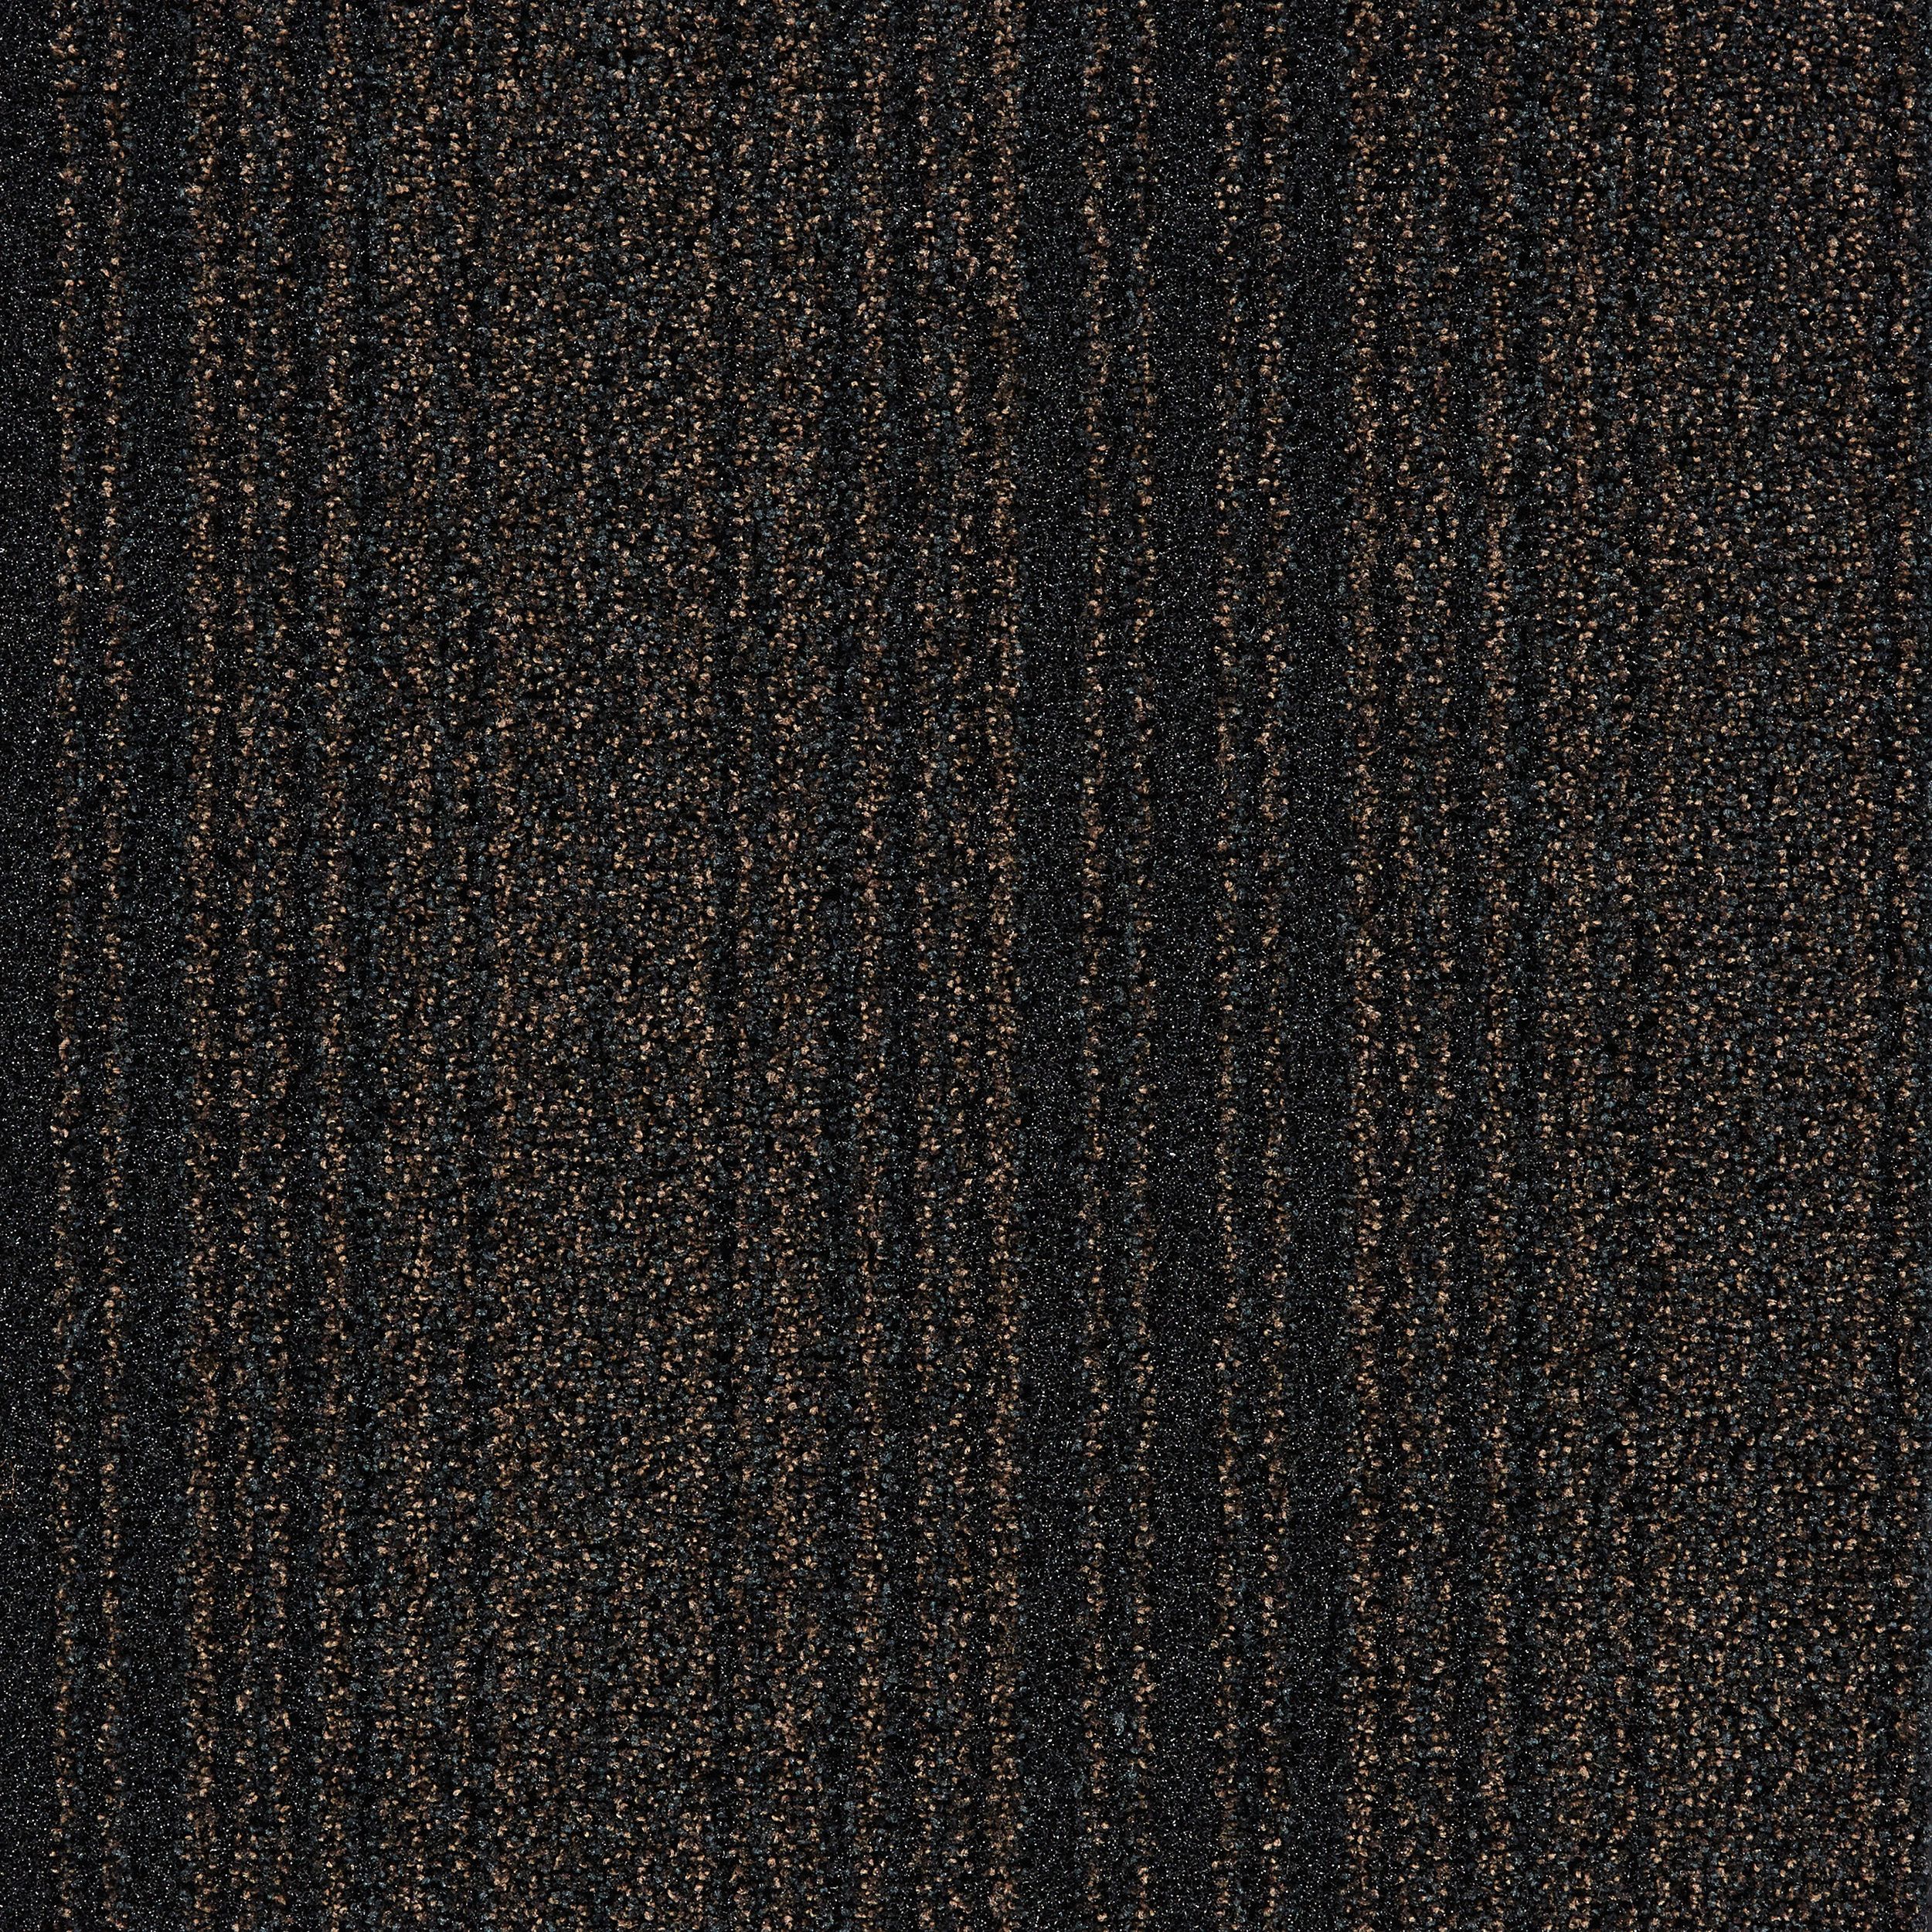 Barricade One Carpet Tile In Brown número de imagen 1